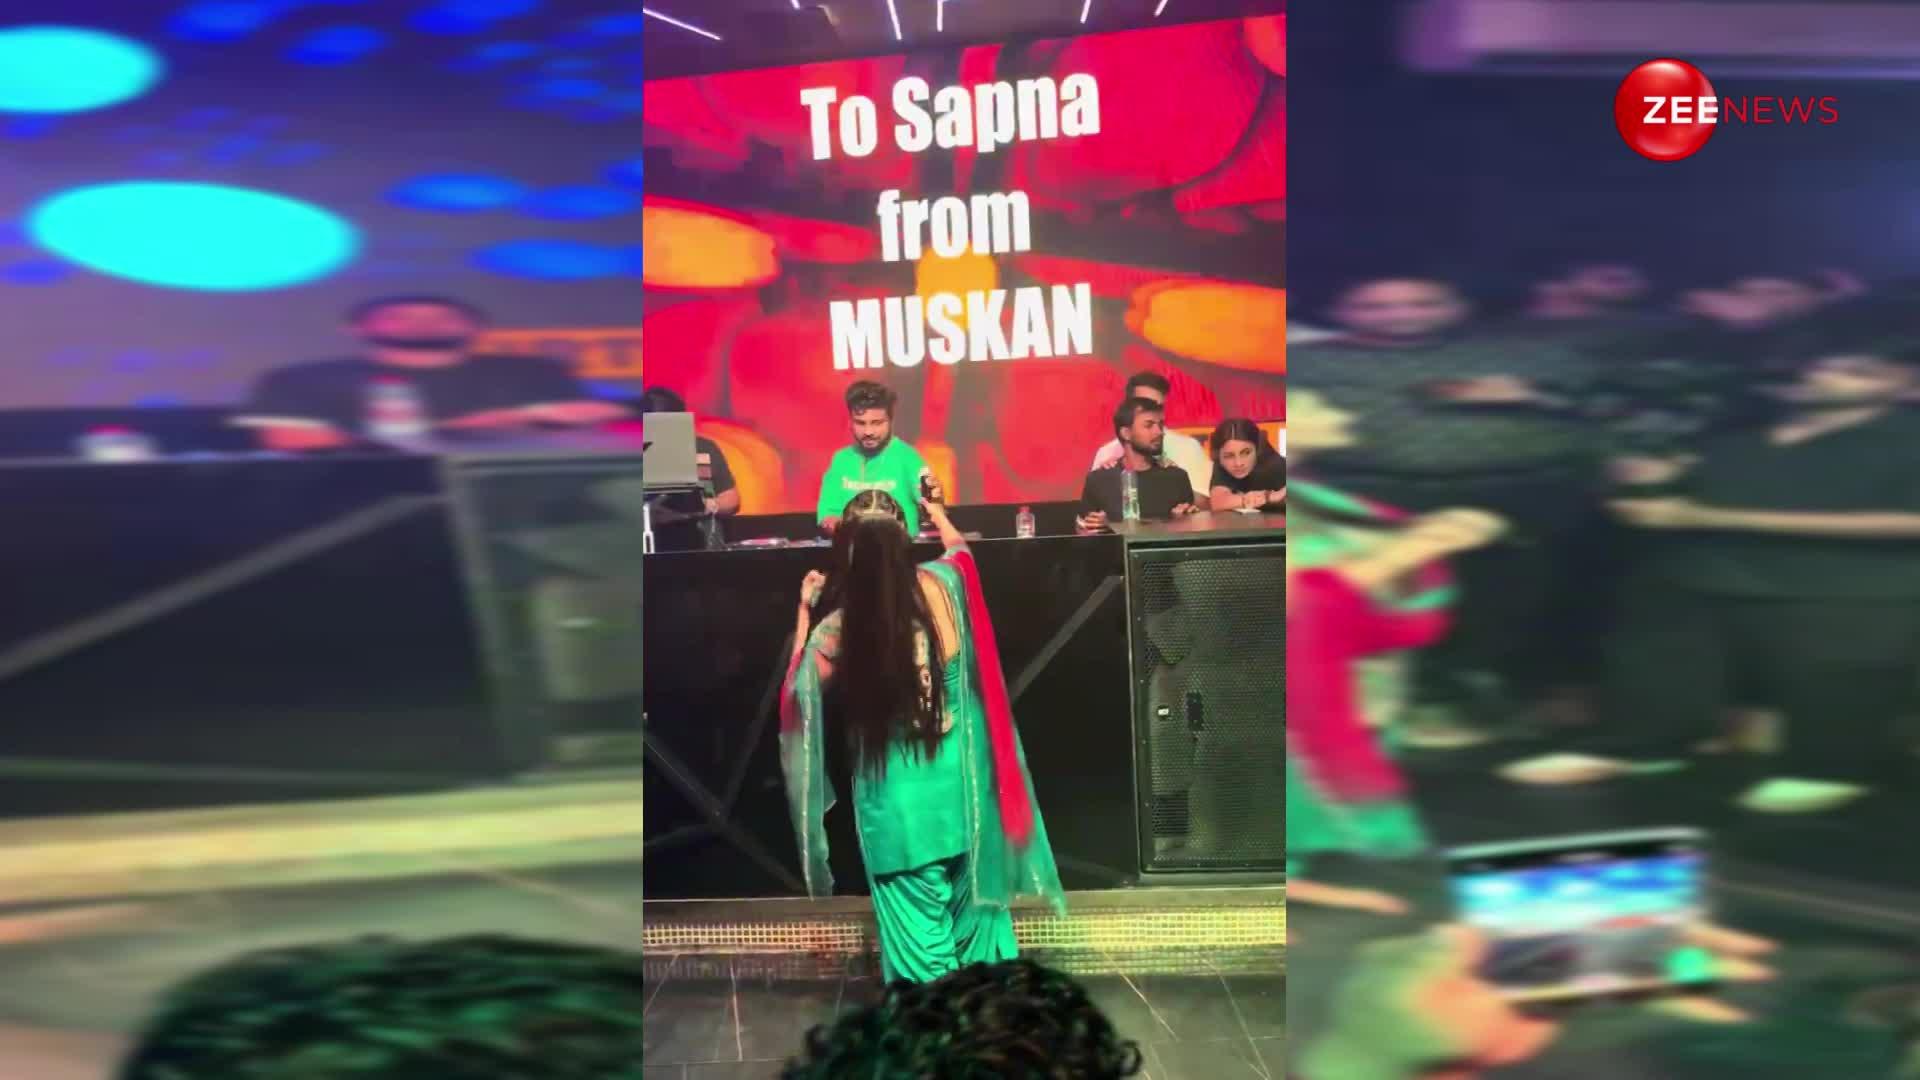 दुबई के क्लब में Sapna Choudhary ने डांस करते हुए दिखाए ऐसे नखरे, देख दिल हार बैठे लोग